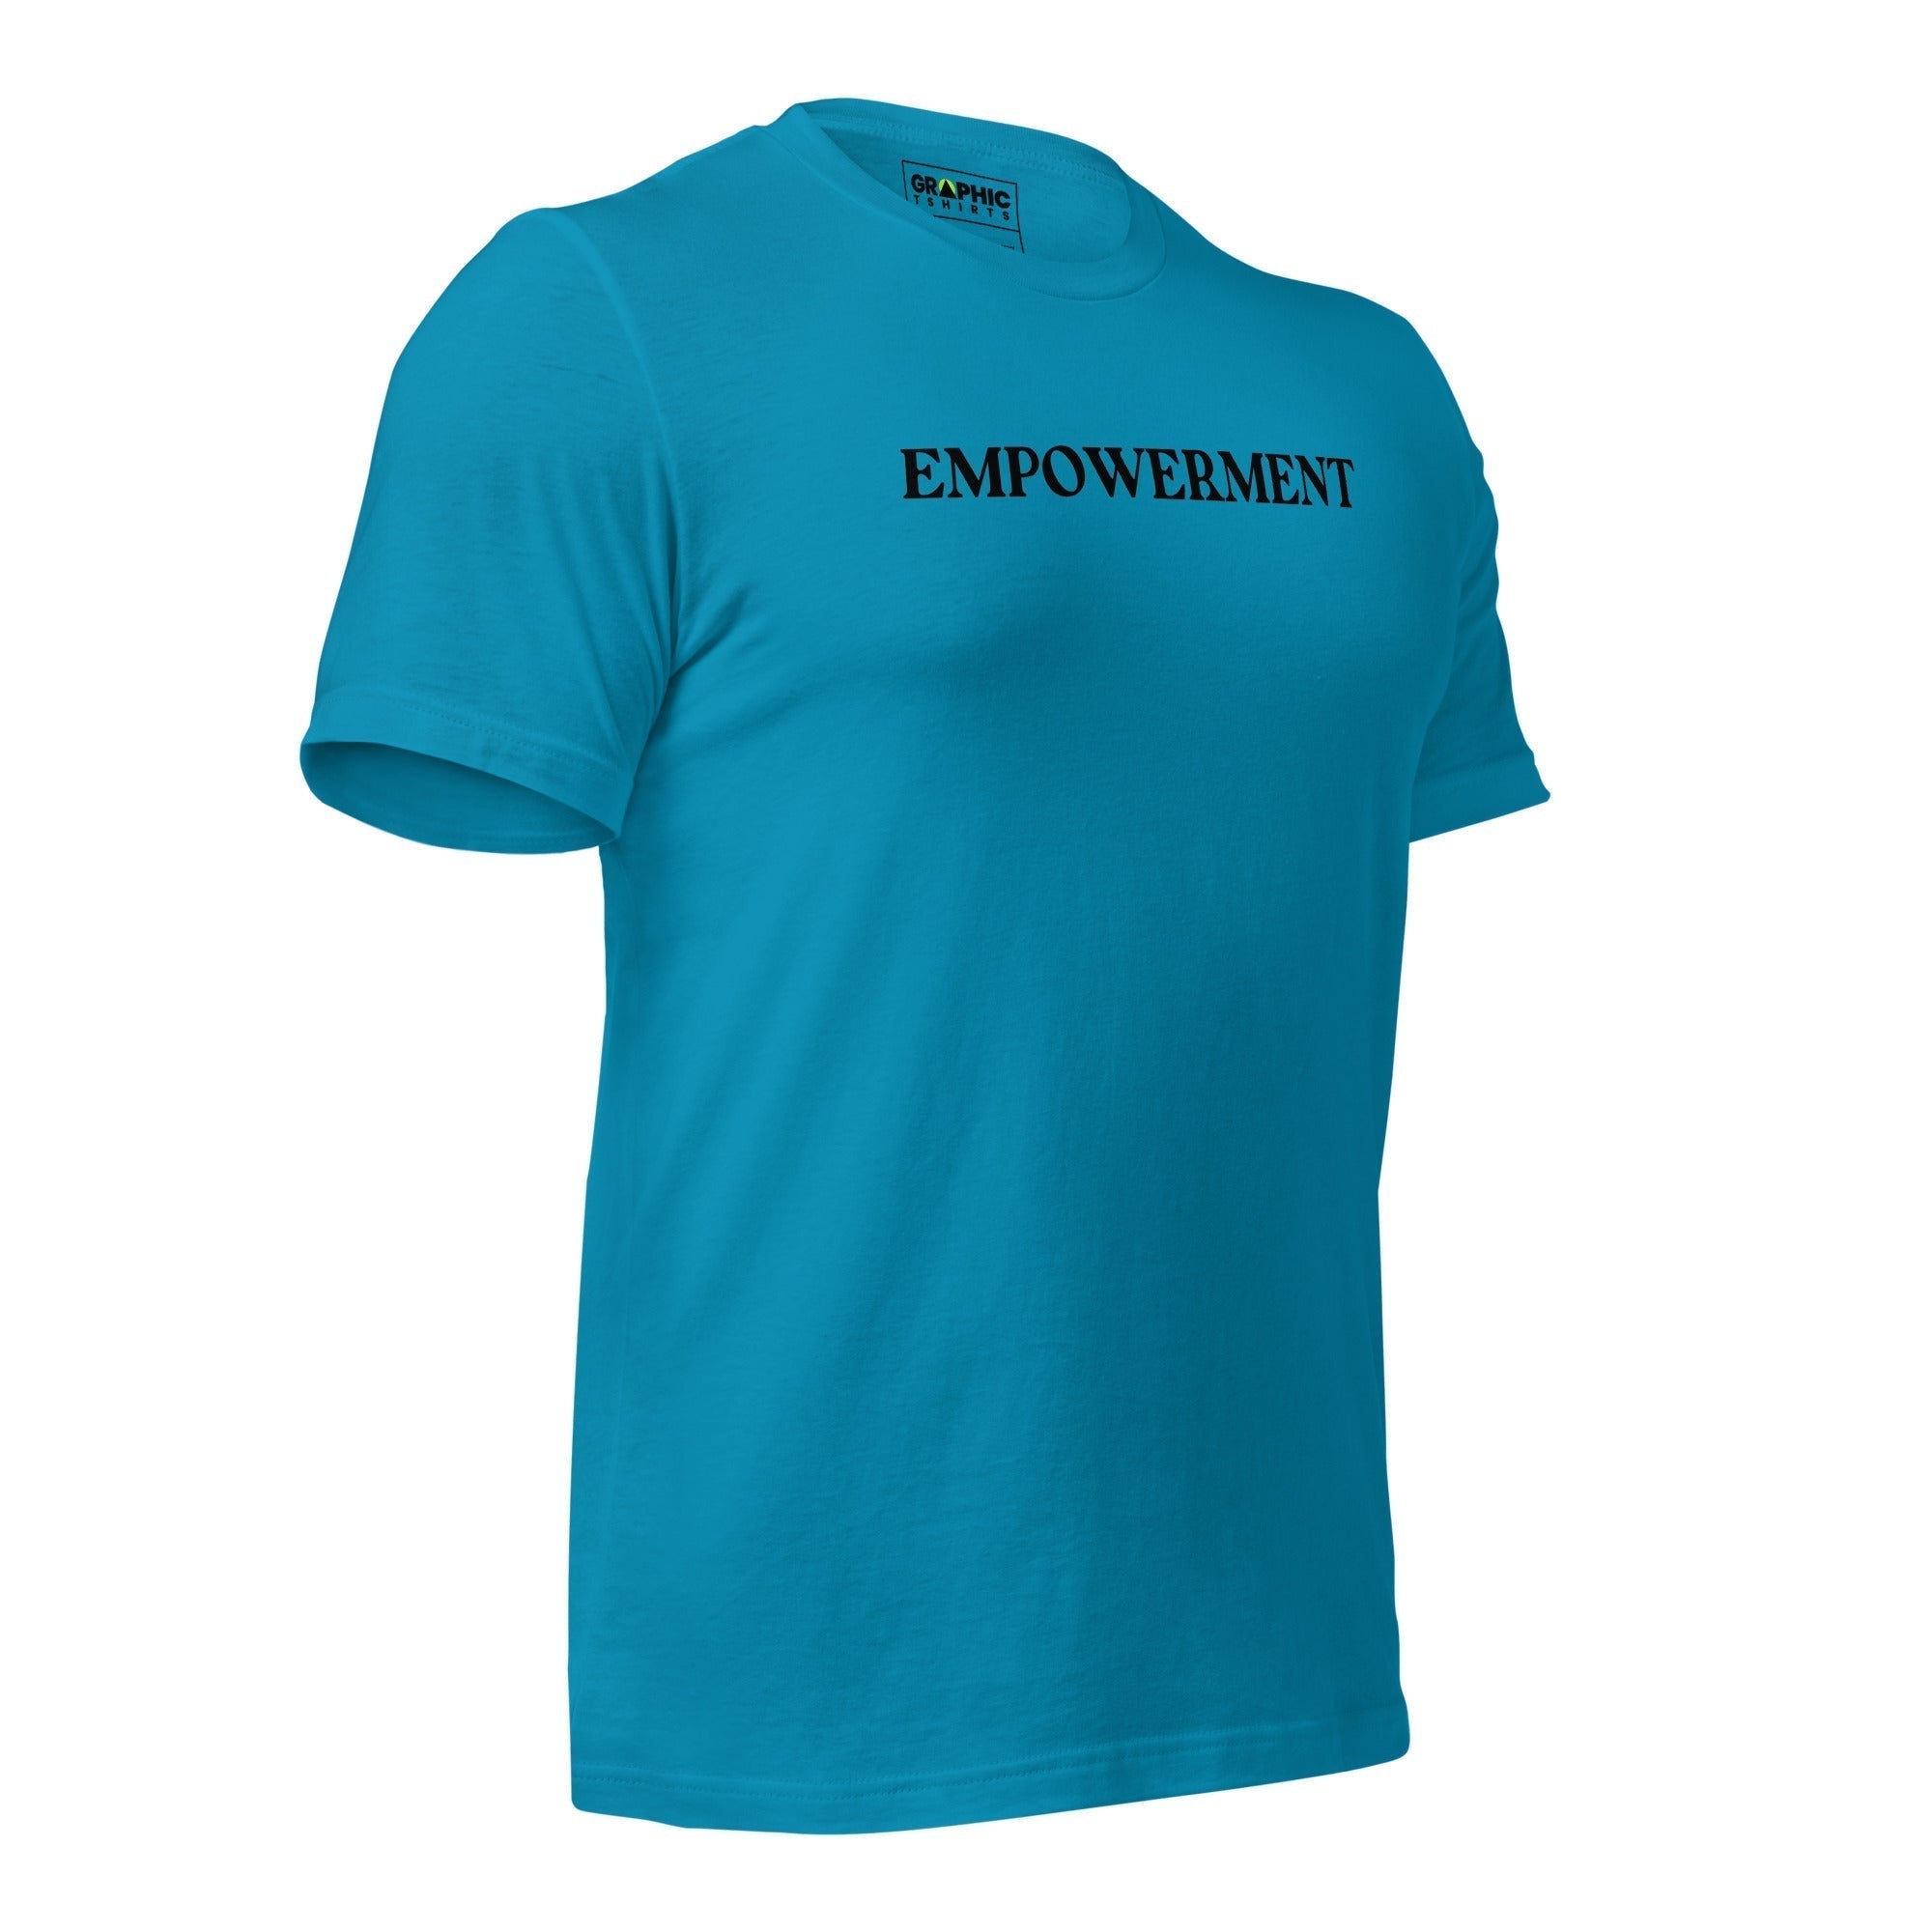 Unisex Staple T-Shirt - Empowerment - GRAPHIC T-SHIRTS